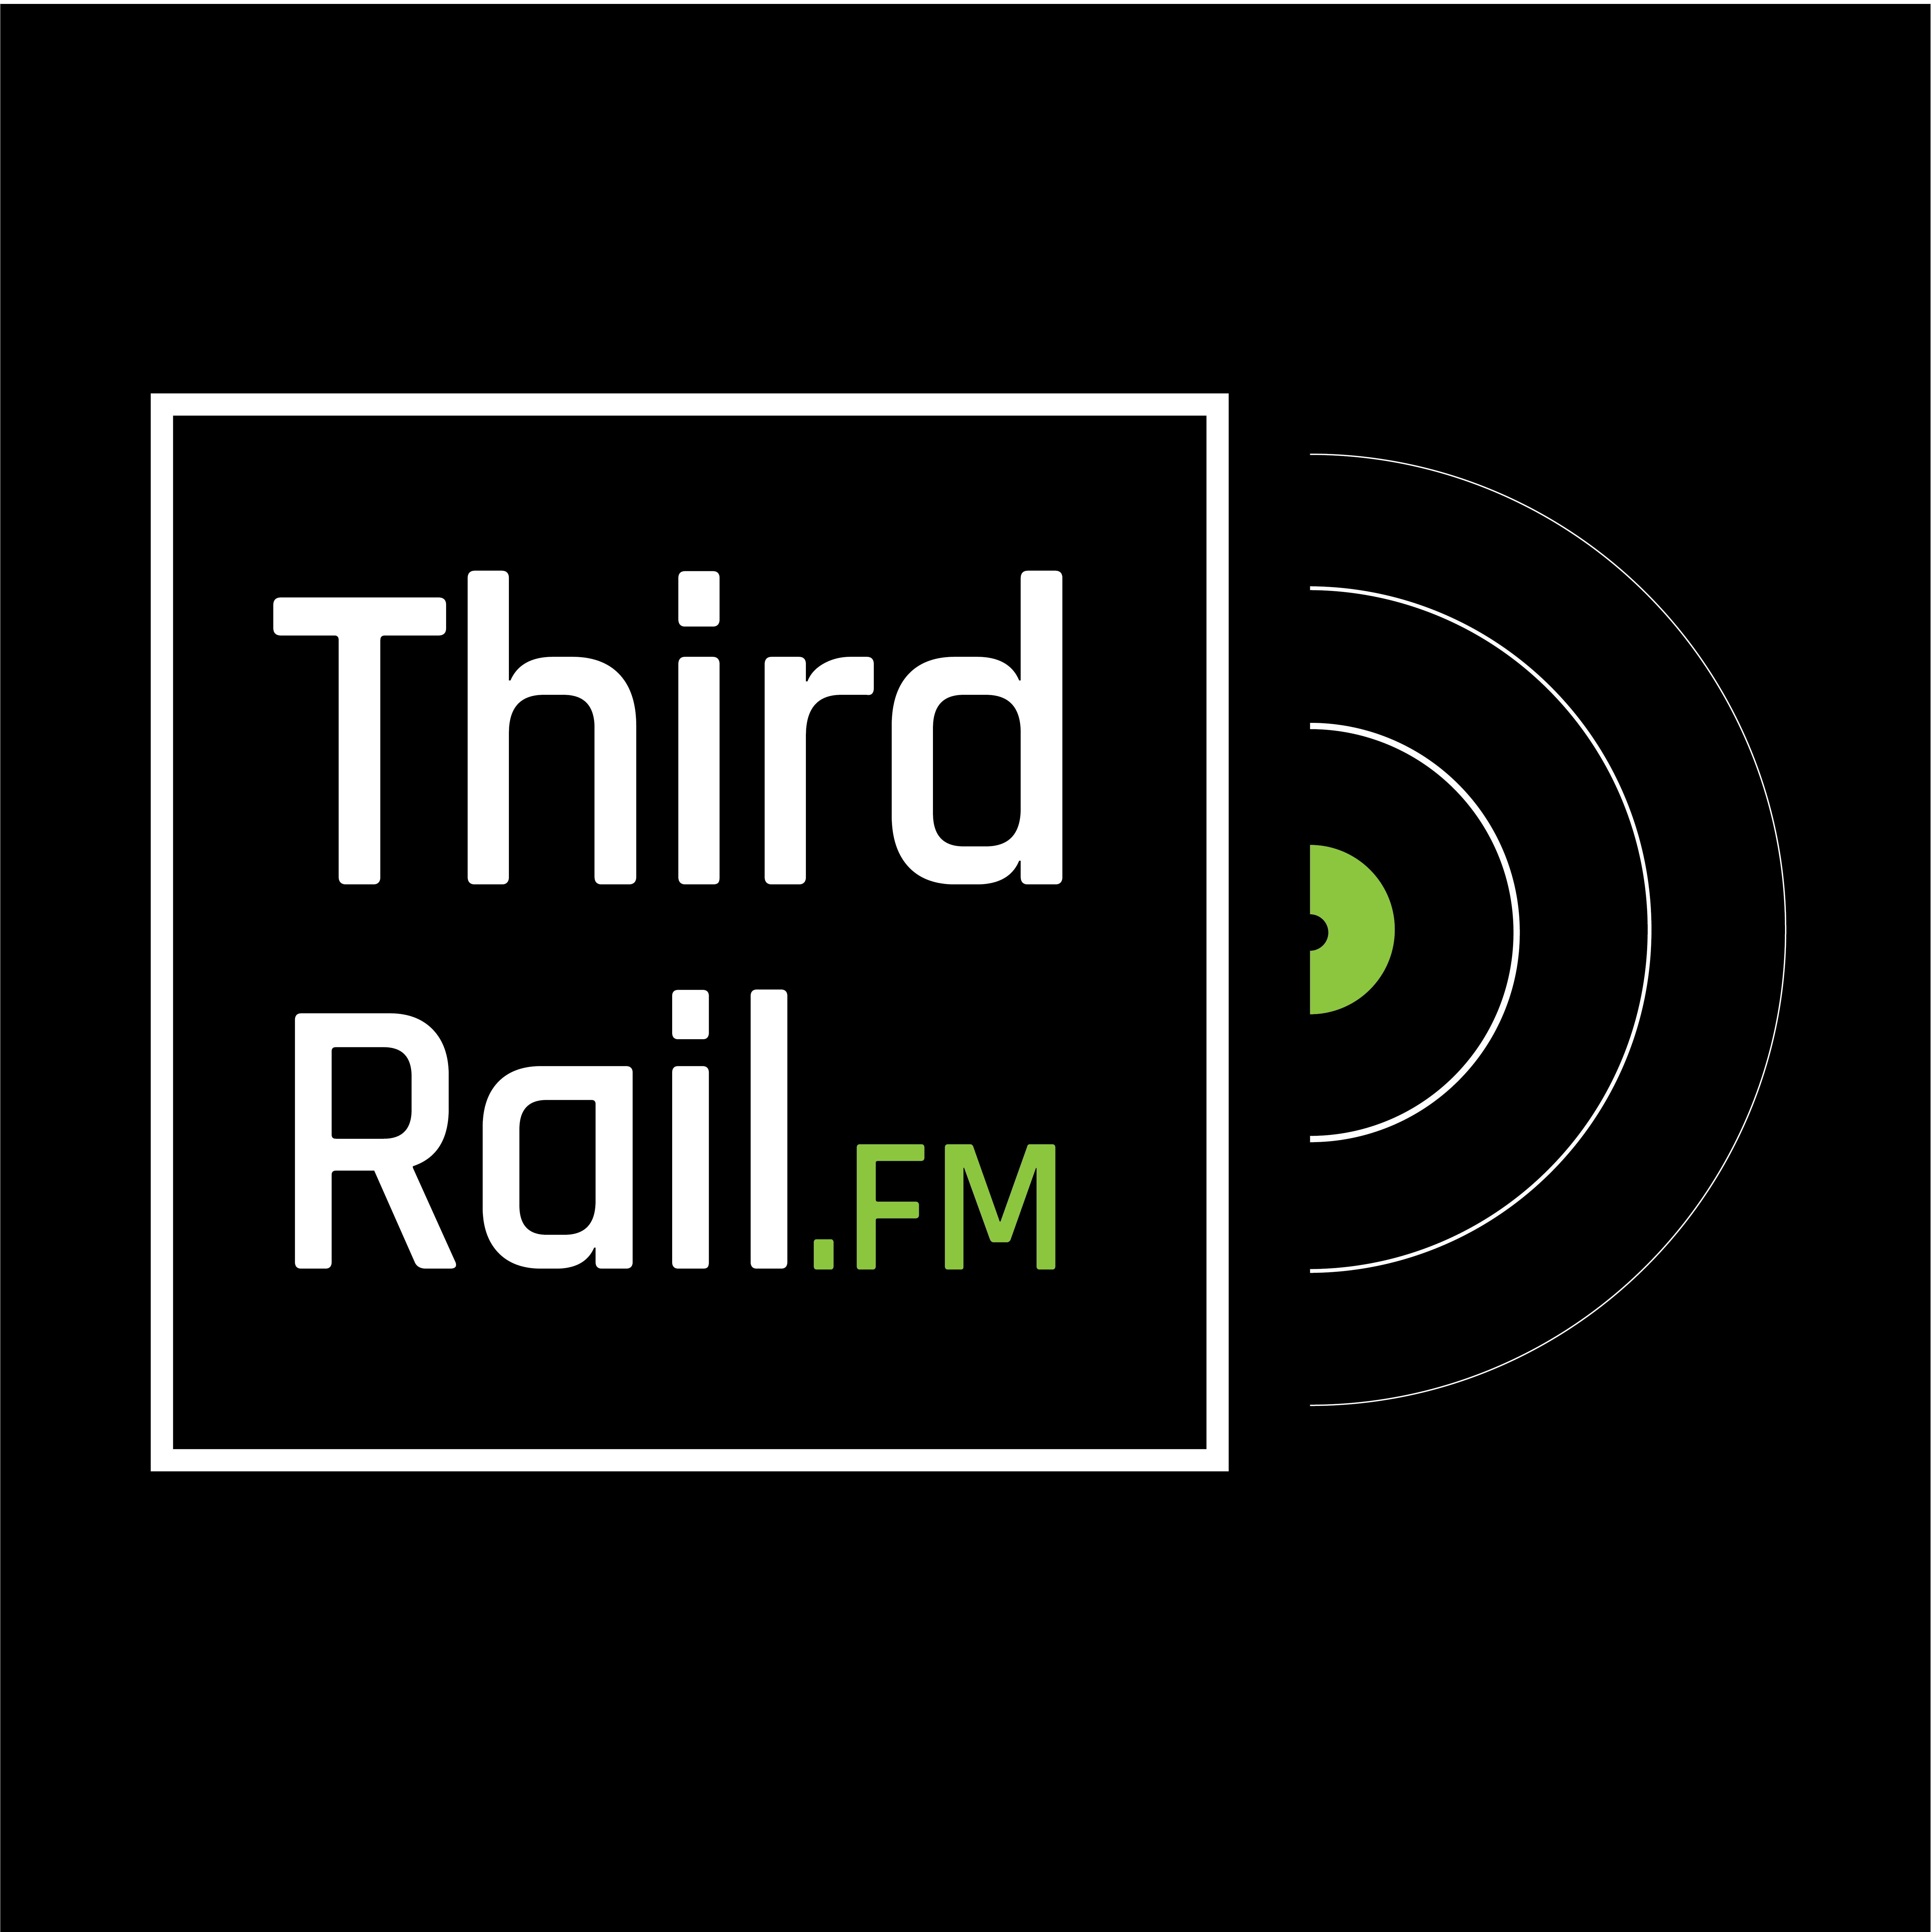 Third Rail ON AIR